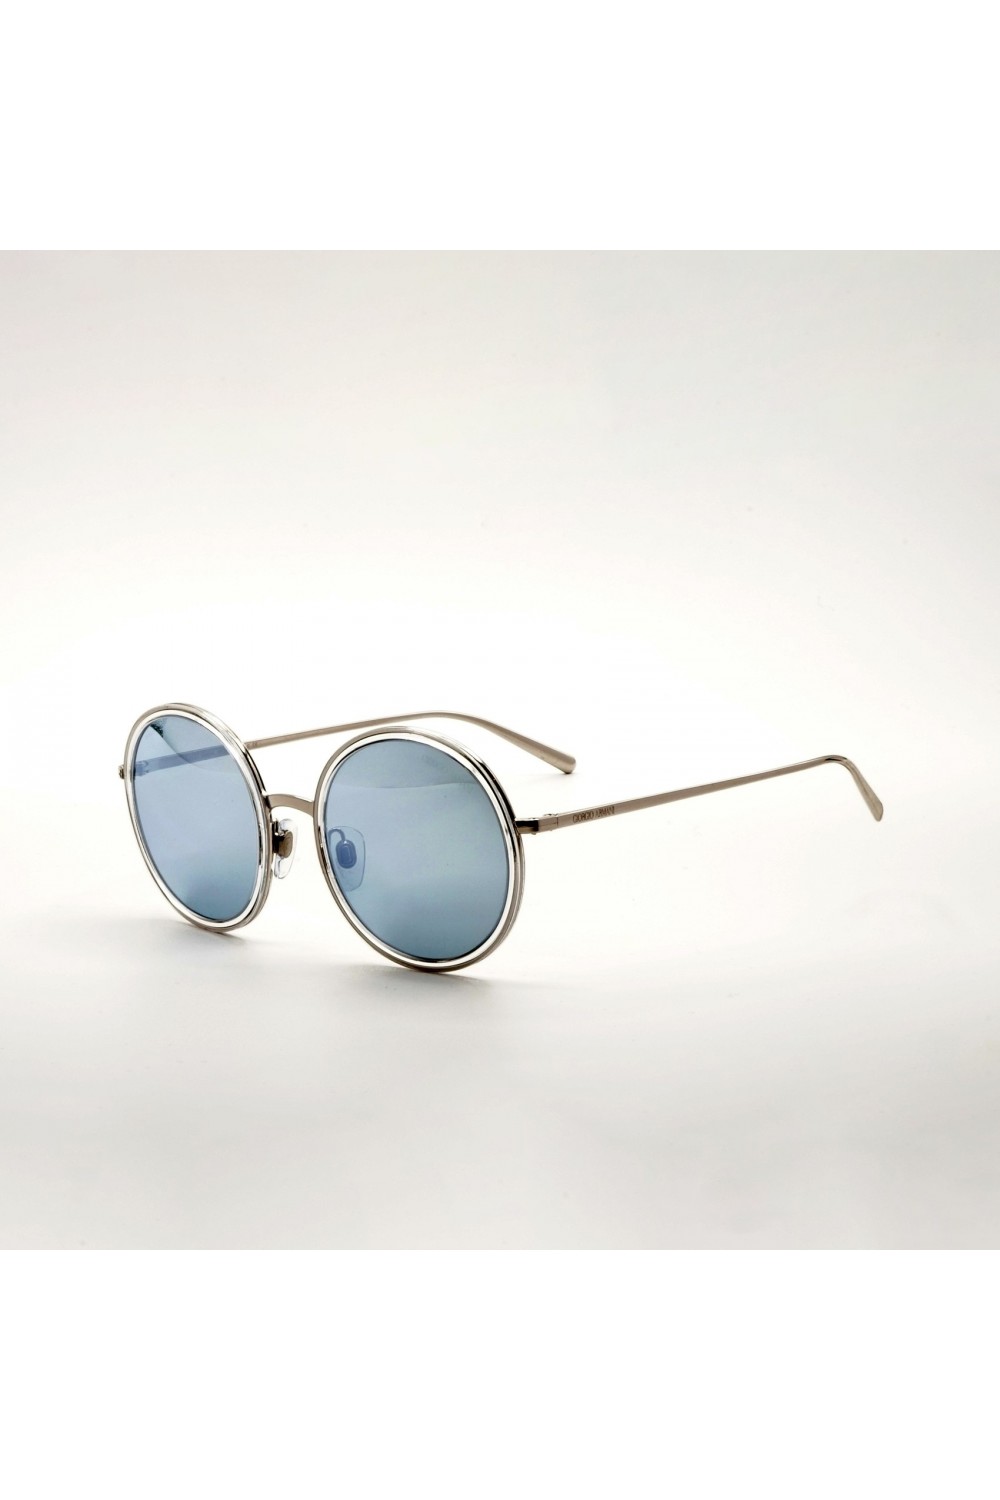 Giorgio Armani - Occhiali da sole in metallo tondi unisex silver - AR6052